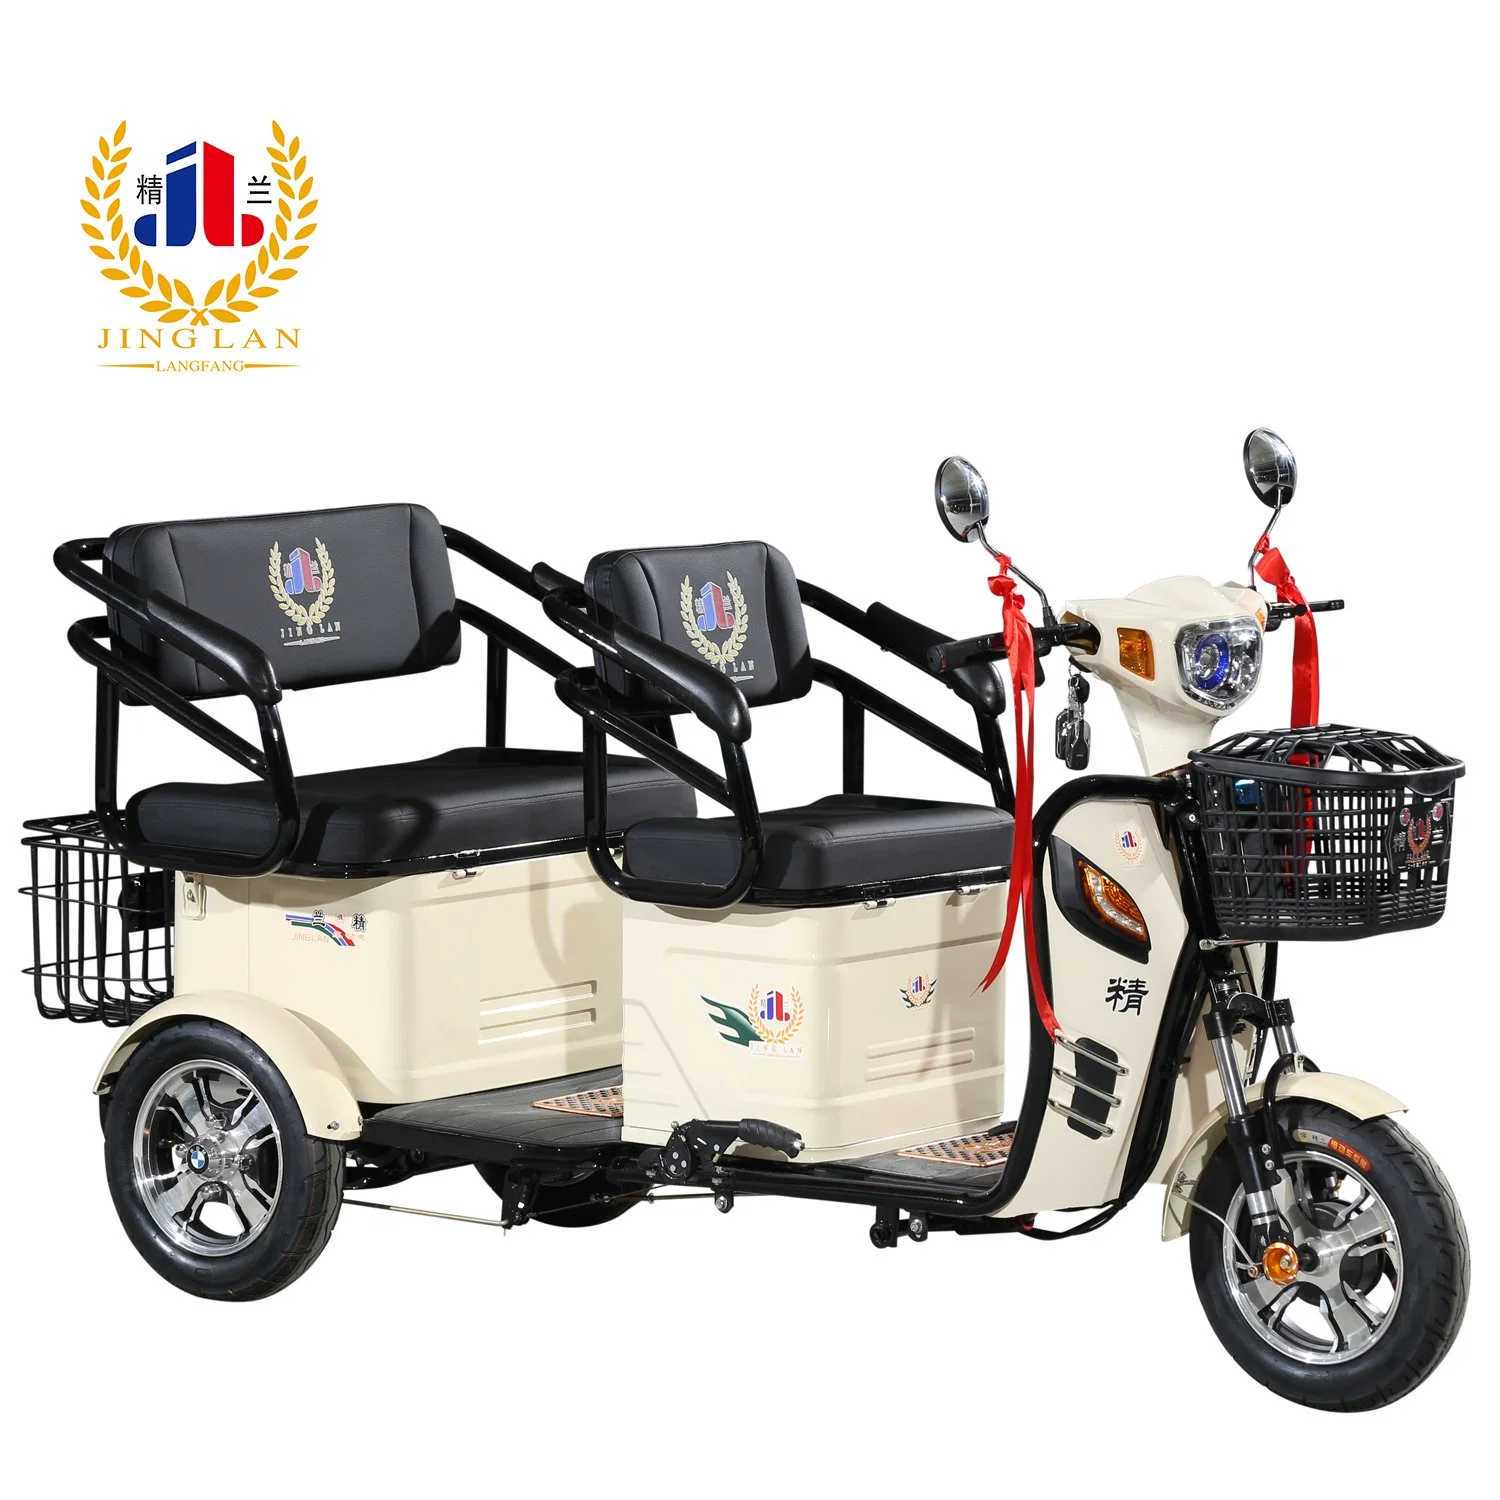 Super Mini взрослых дешево 3 Колеса мобильность Trike 48V мотор 500 Вт электрический инвалидных колясках 3 колеса для скутера личных или семейных использовать